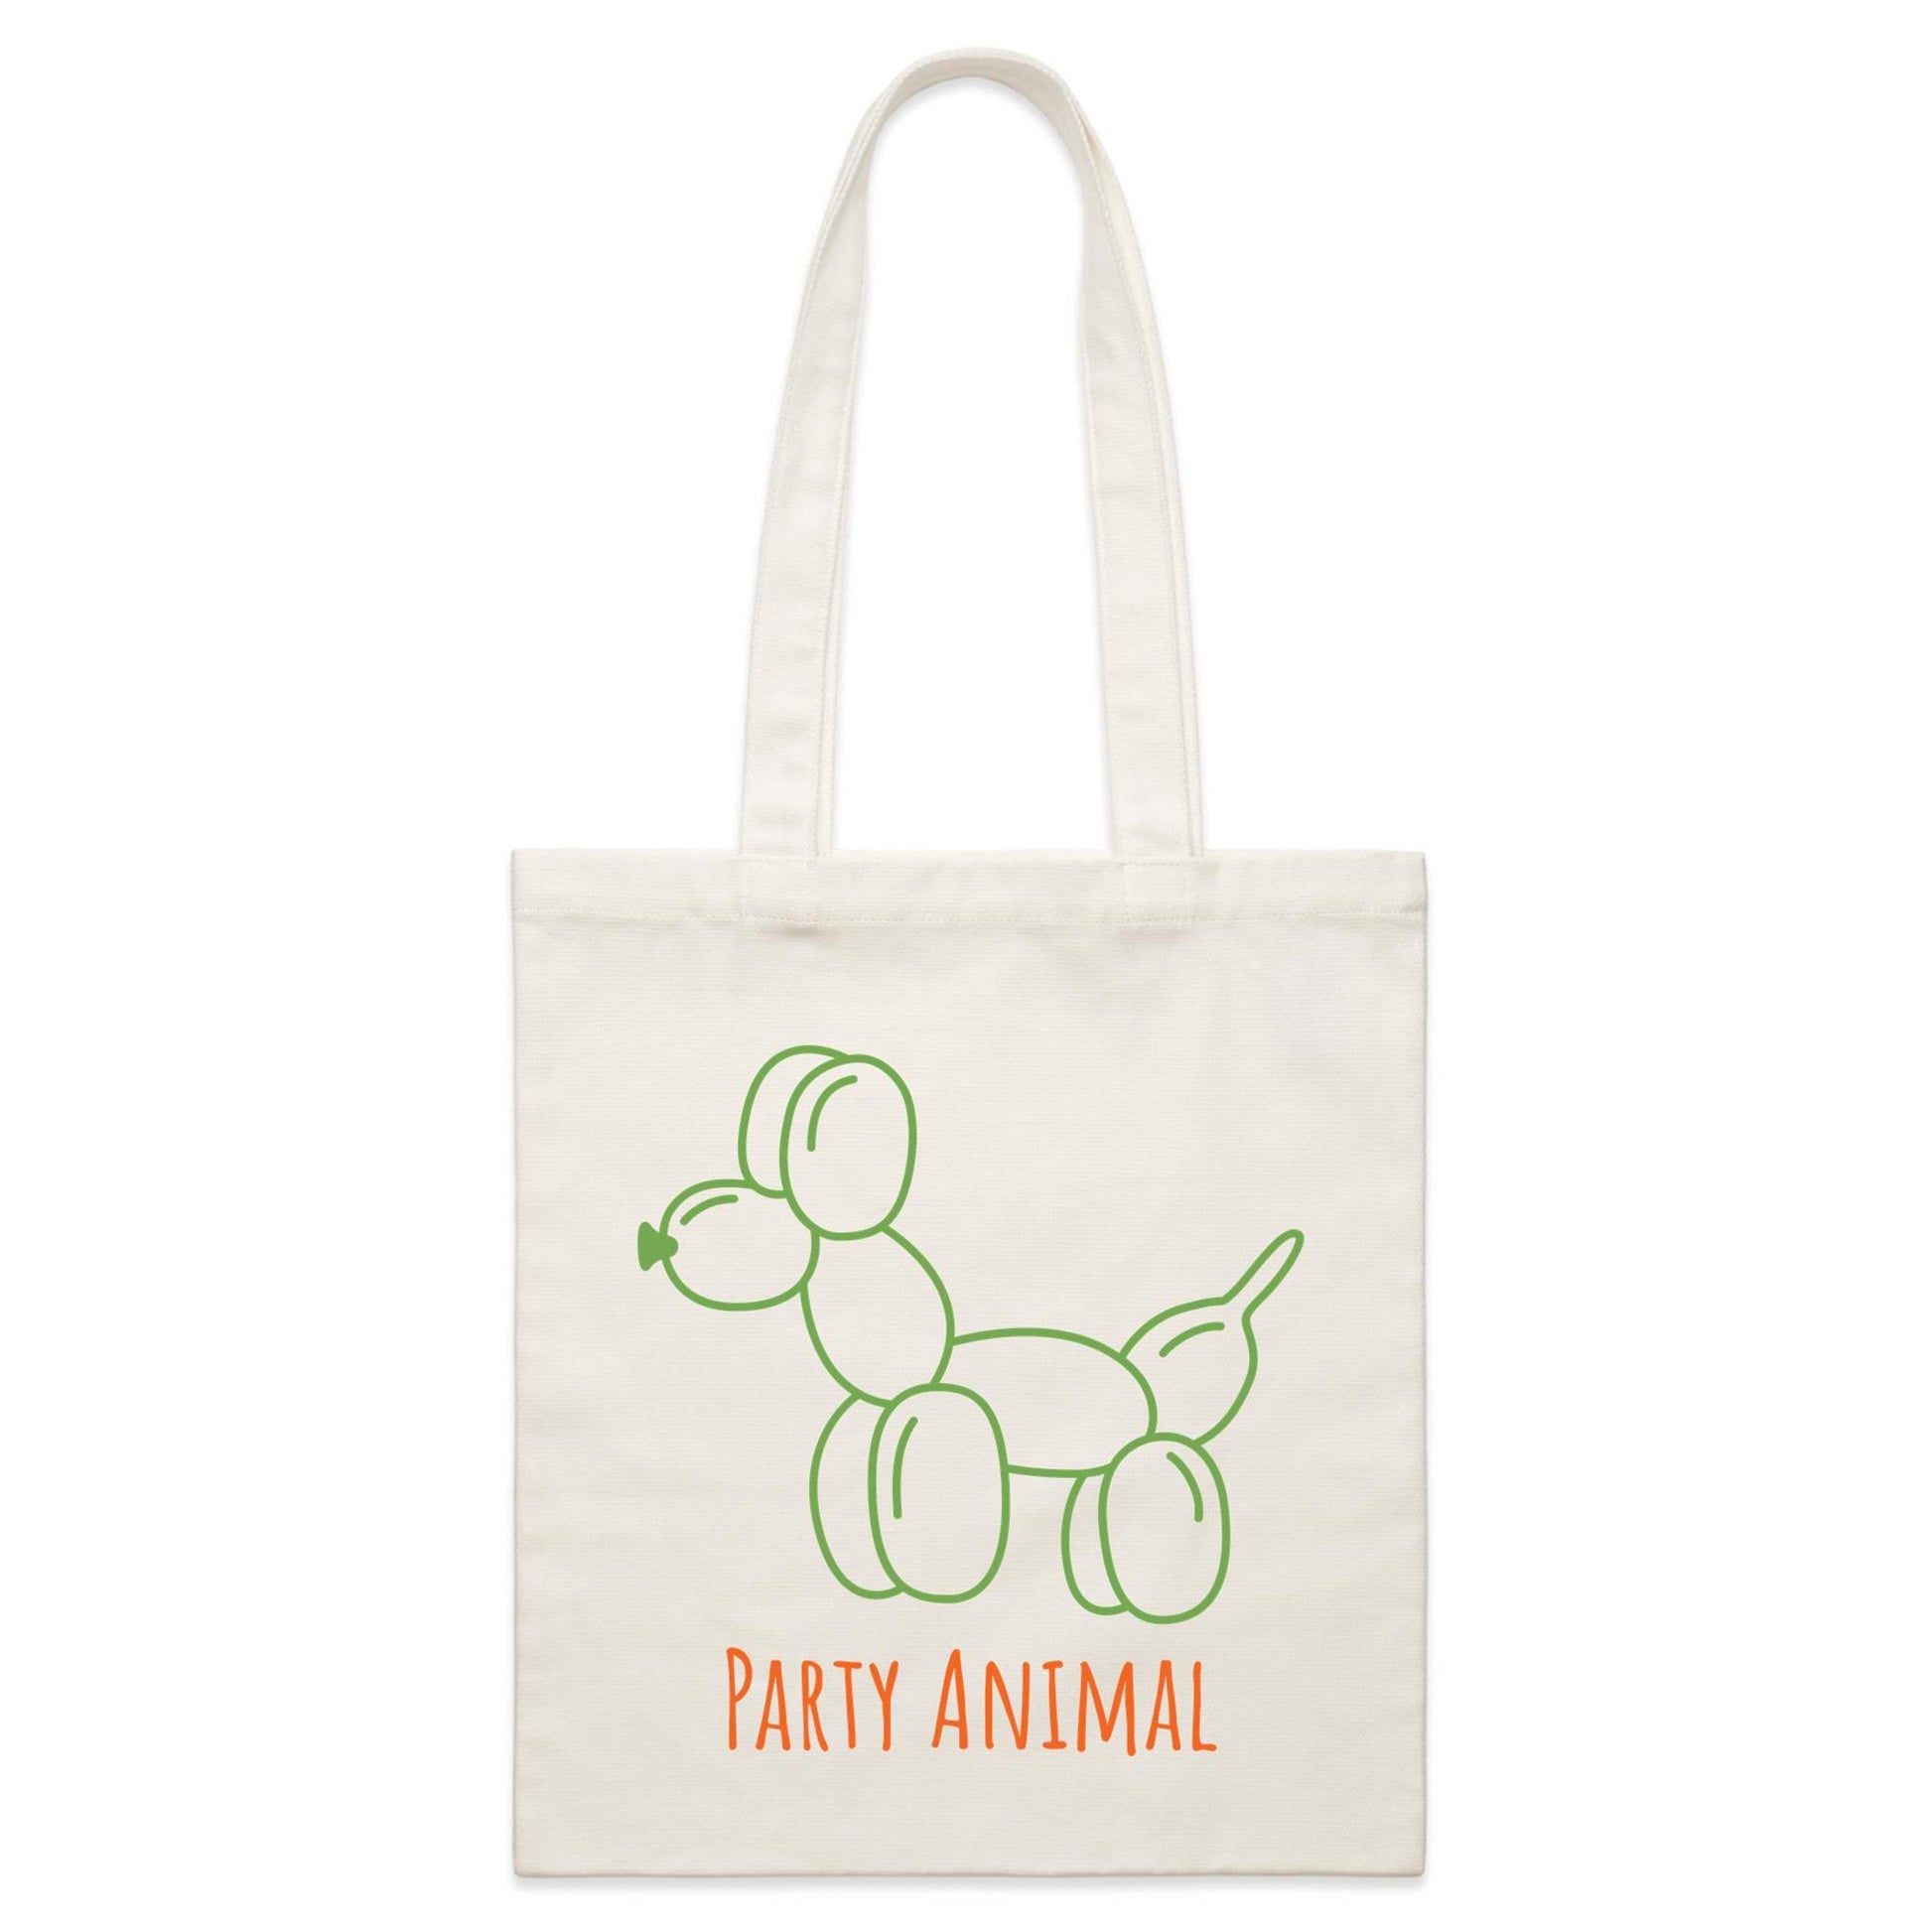 Party Animal - Parcel Canvas Tote Bag Default Title Parcel Tote Bag